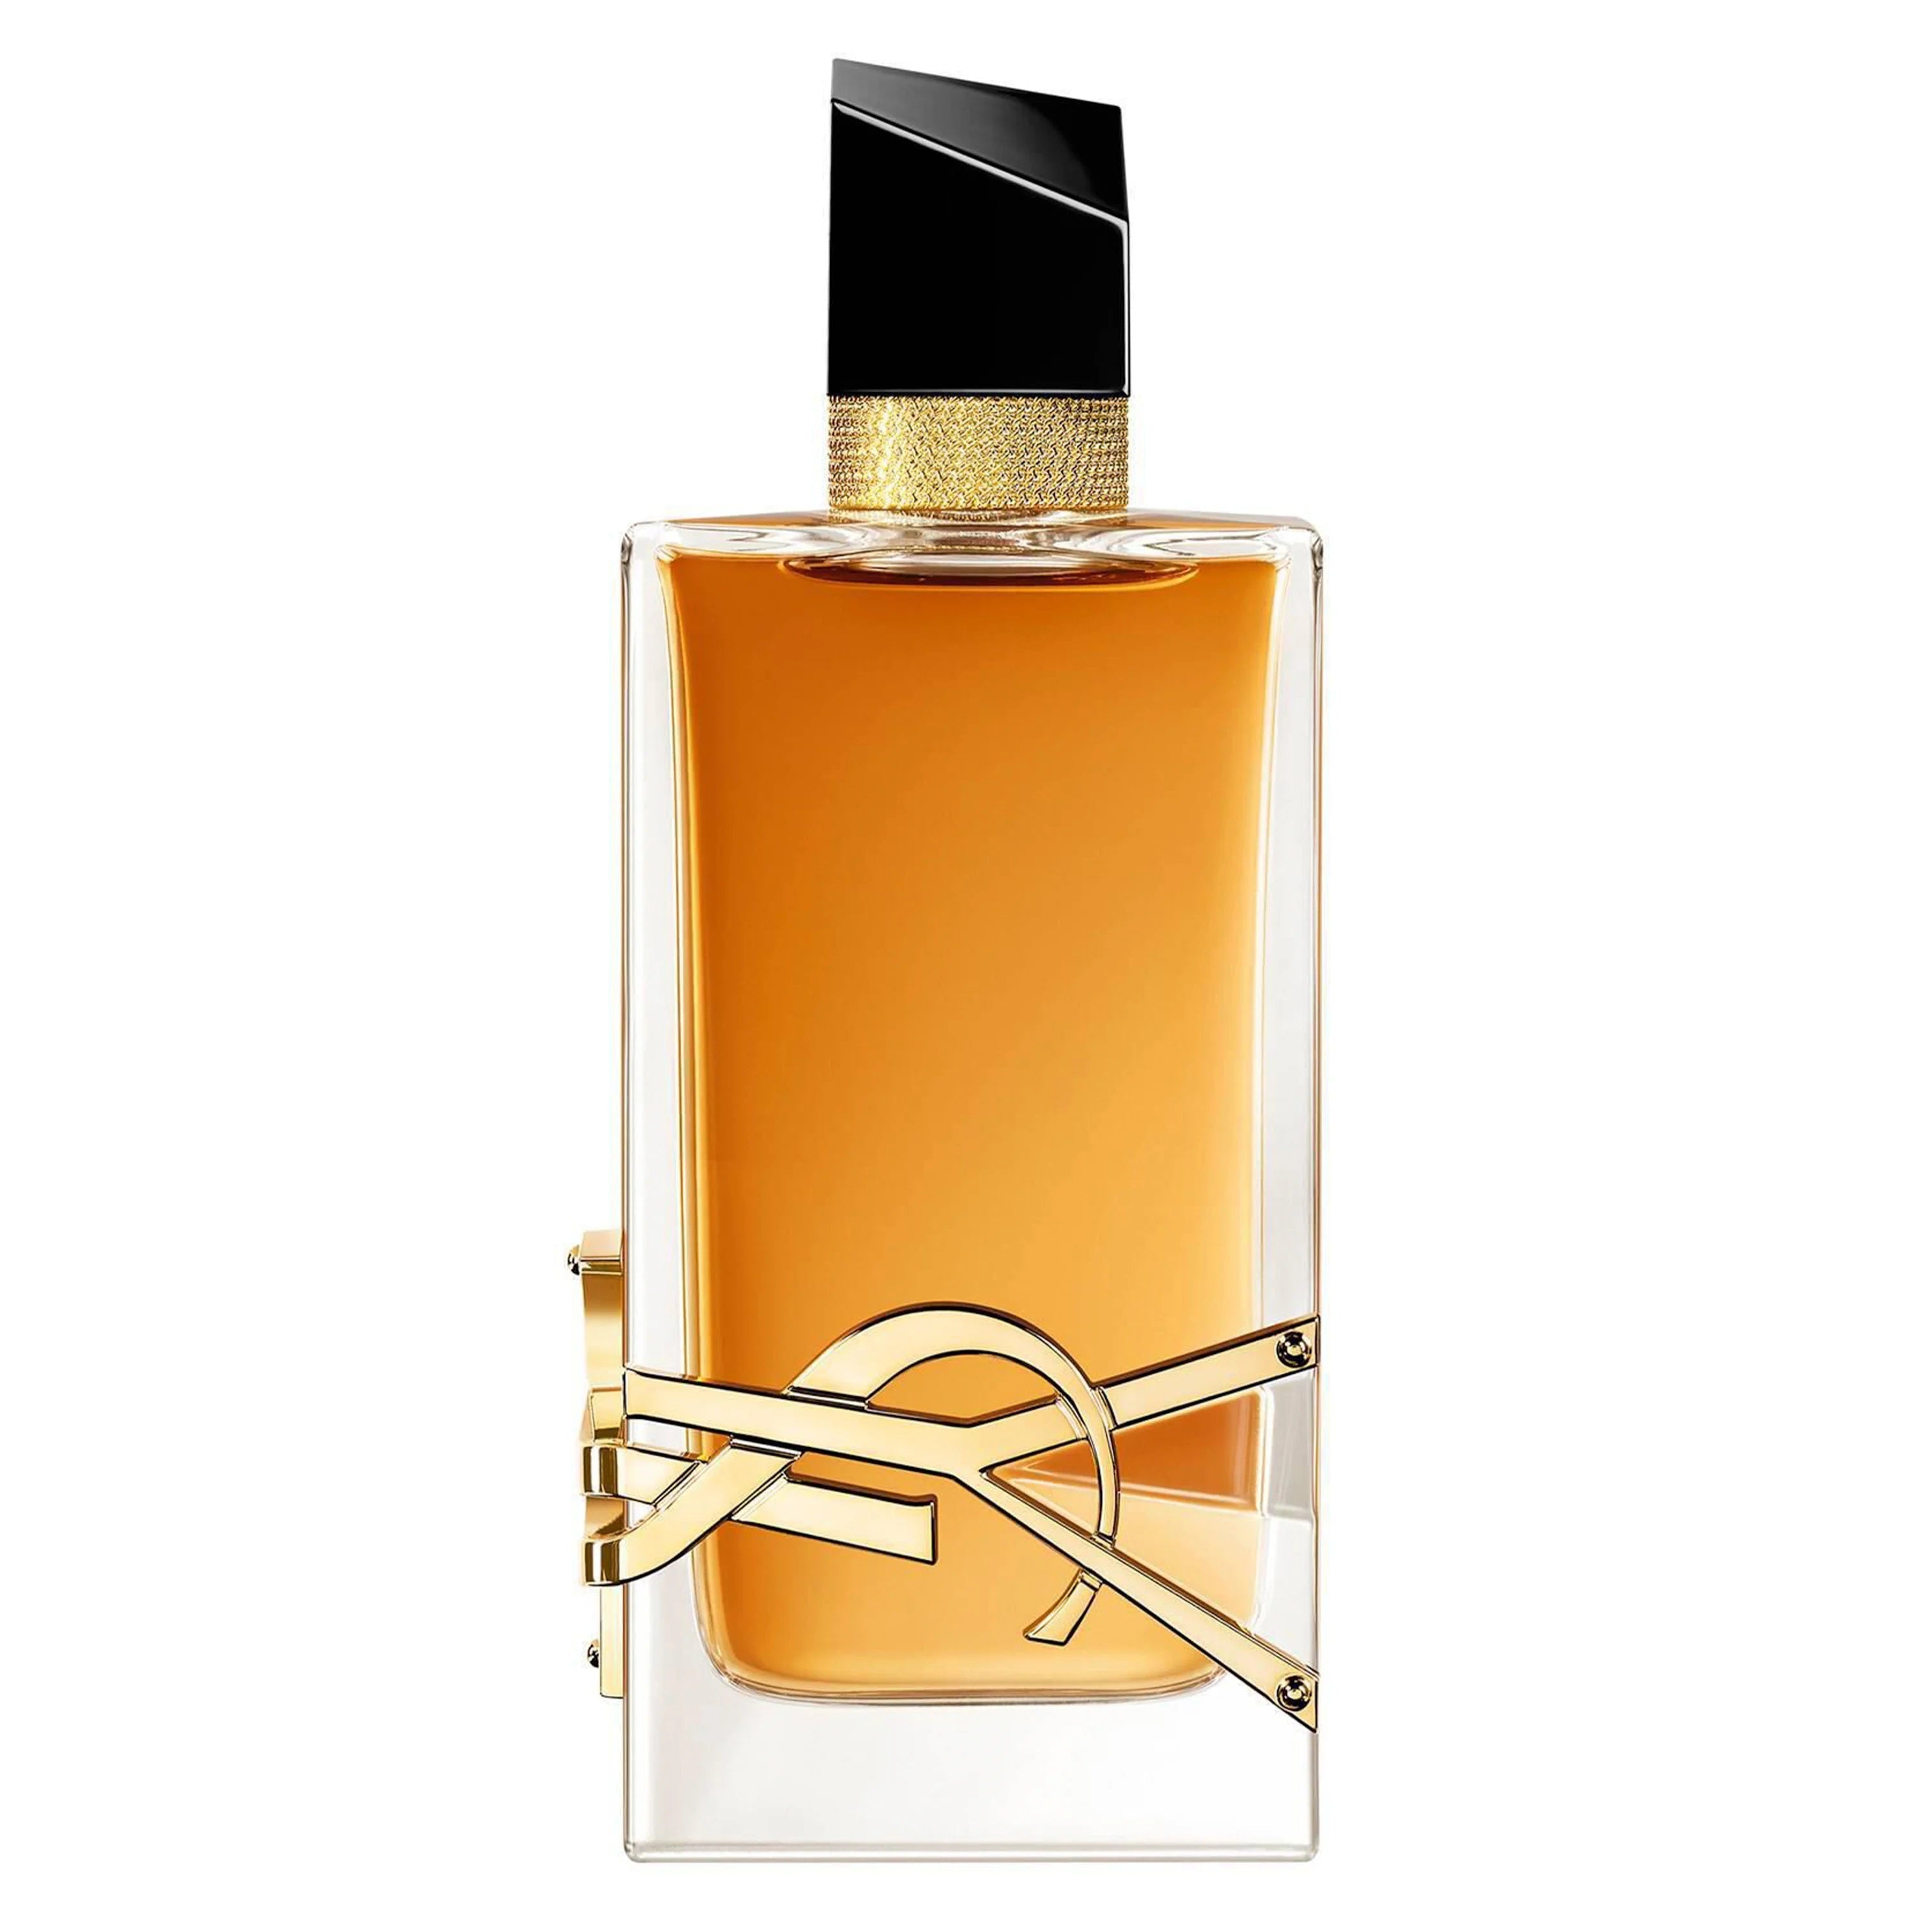 Yves Saint Laurent Libre Intense Eau de Parfum Spray 90ml - Feel Gorgeous